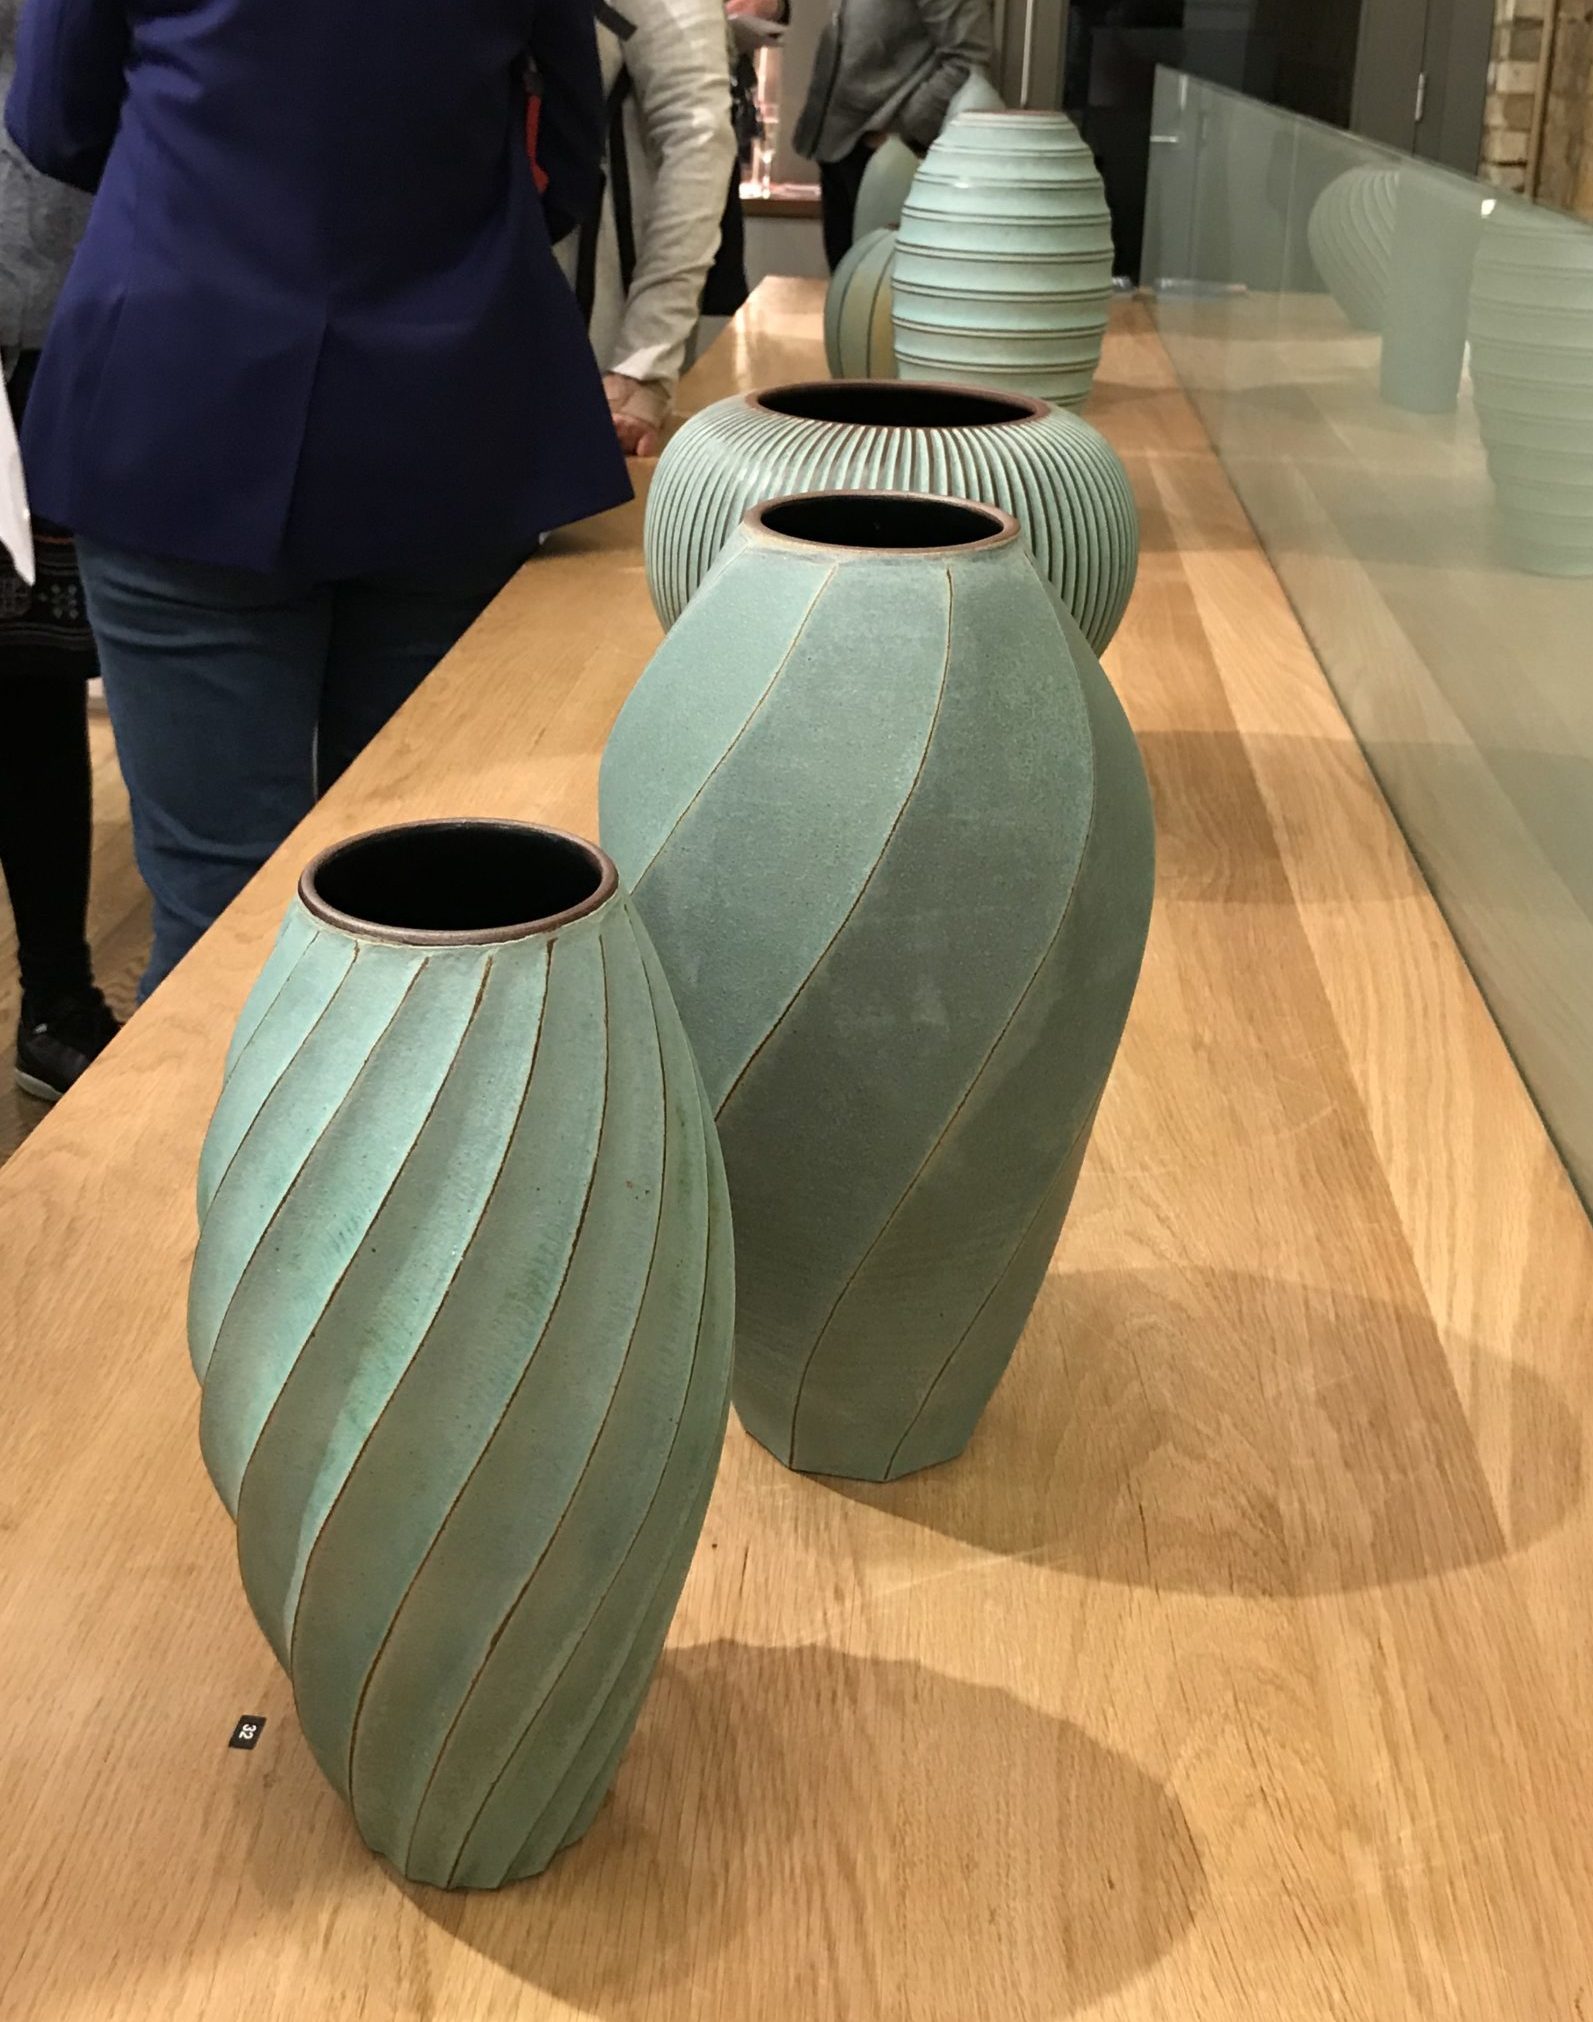 Line & Form at Contemporary Ceramics